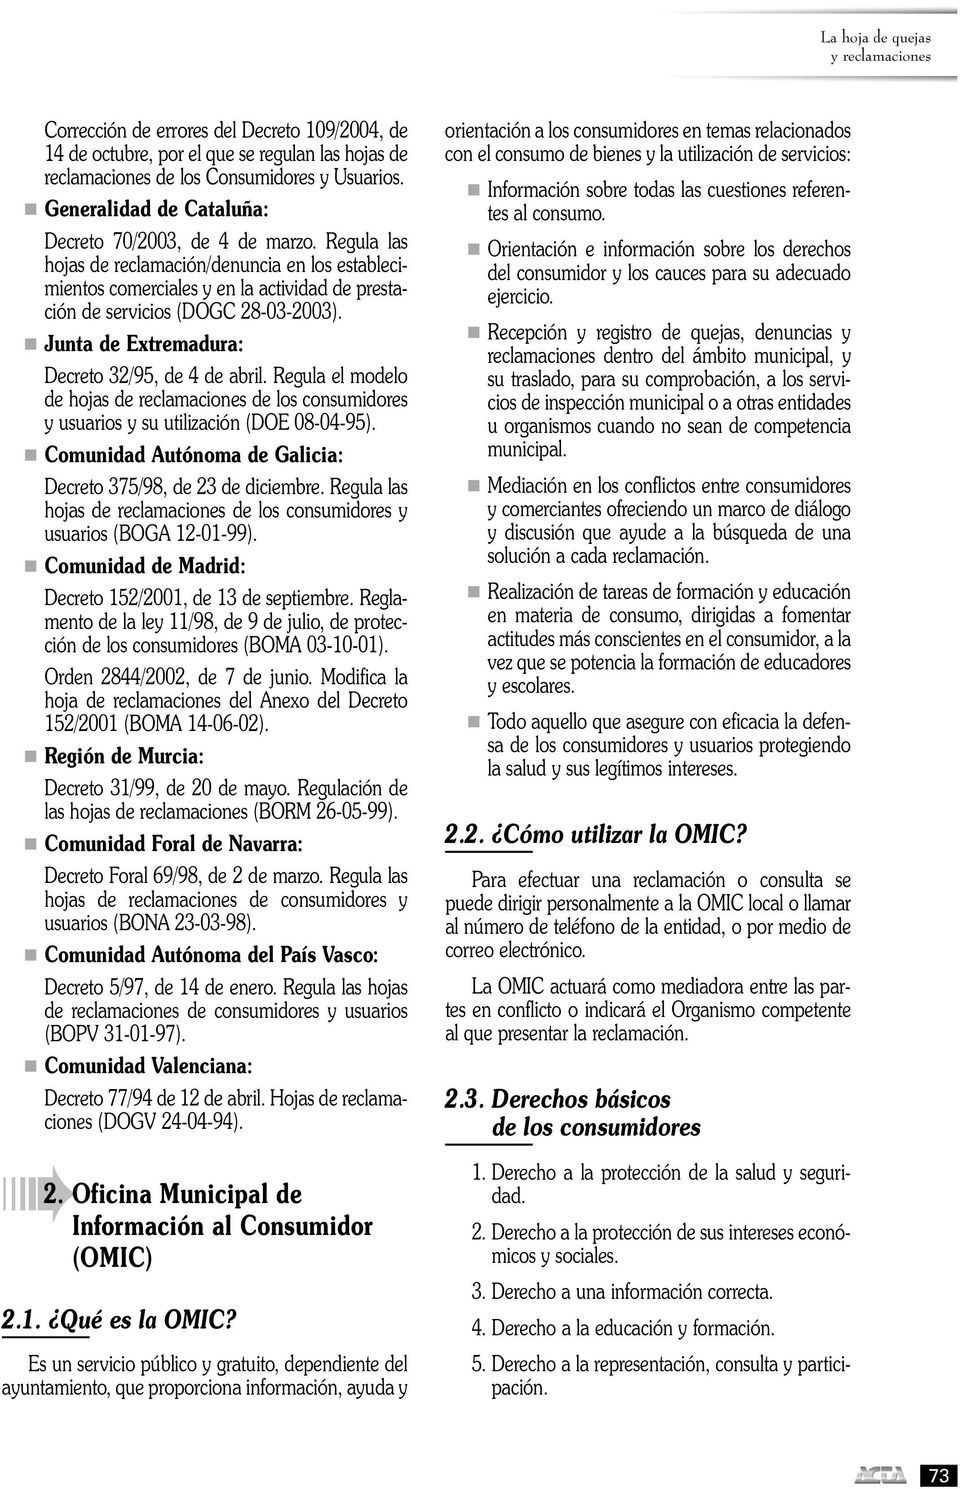 n Junta de Extremadura: Decreto 32/95, de 4 de abril. Regula el modelo de hojas de reclamaciones de los consumidores y usuarios y su utilización (DOE 08-04-95).